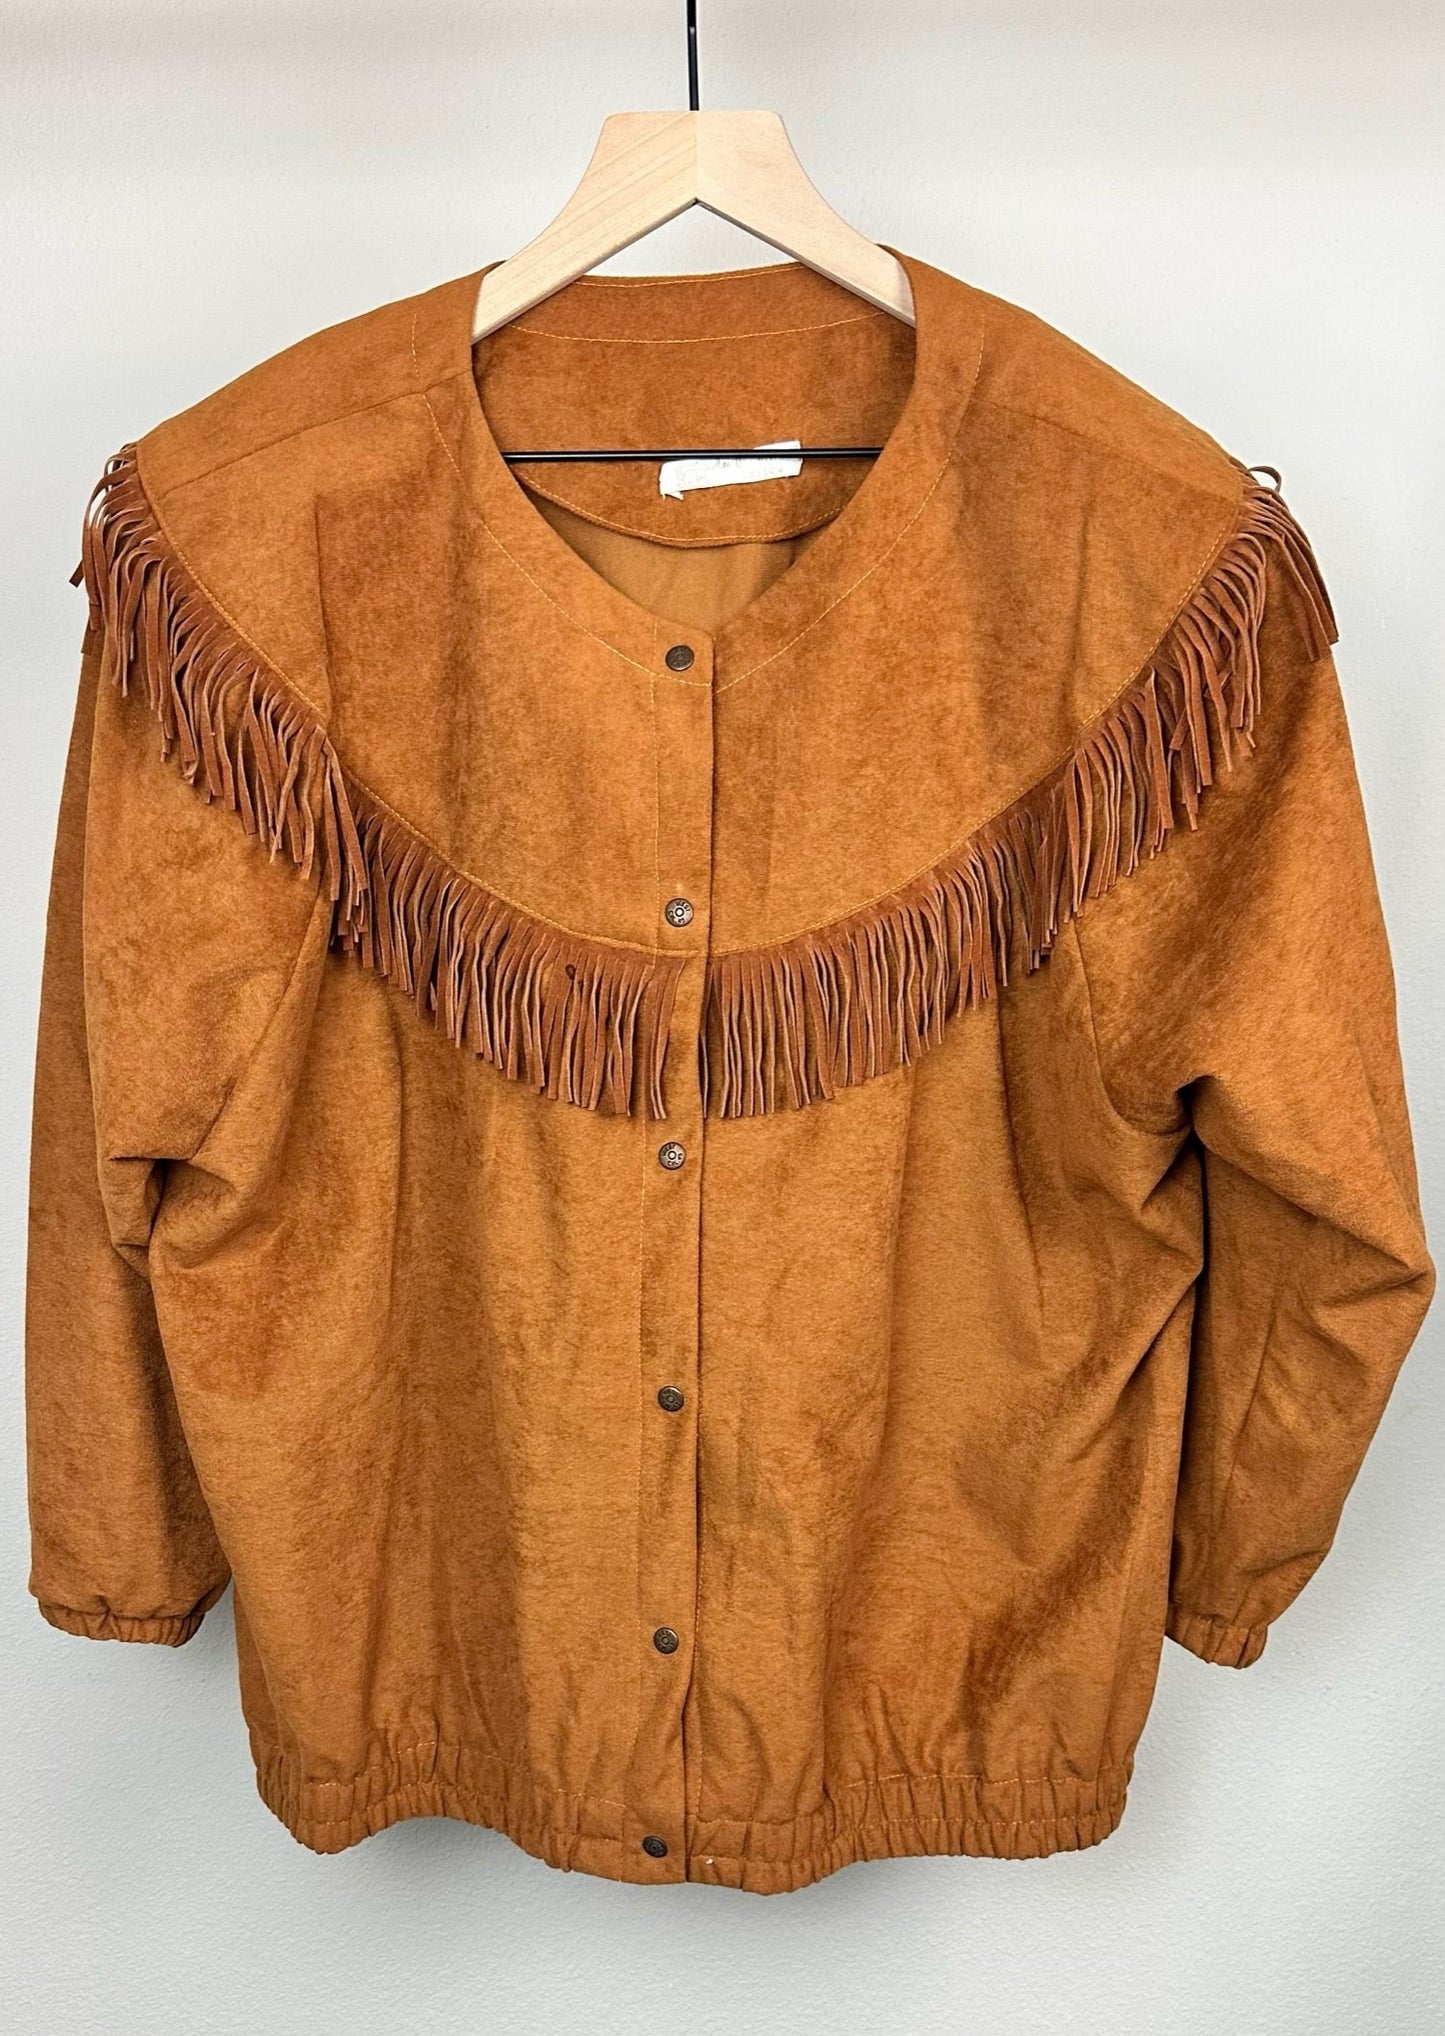 Western Fringe Jacket and Skirt Set